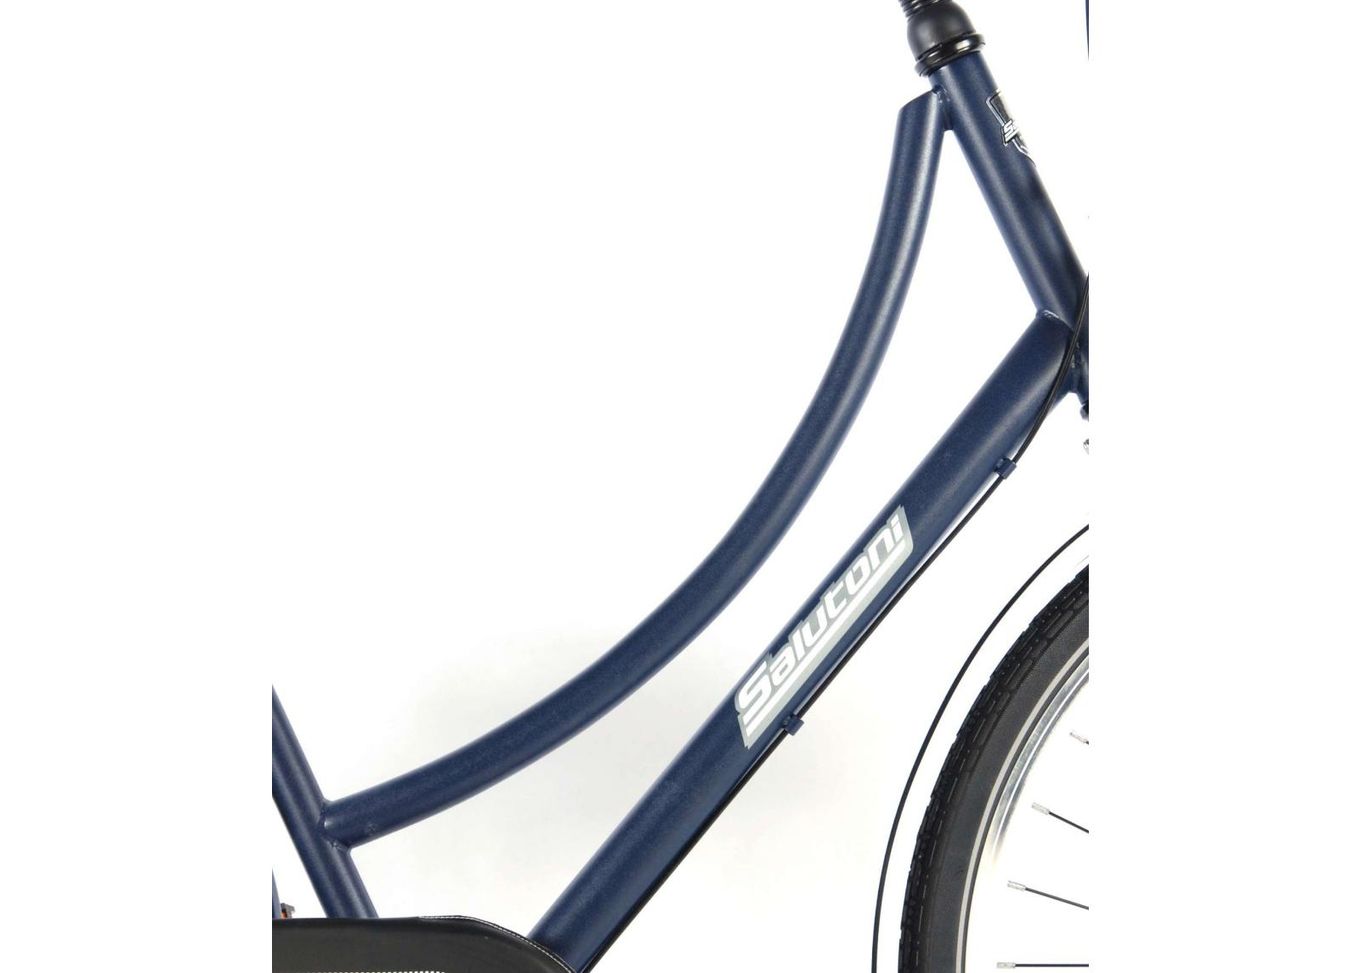 Женский городской велосипед SALUTONI Dutch oma bicycle Glamour 28 дюйма 56 см Shimano Nexus 3 передачи увеличить